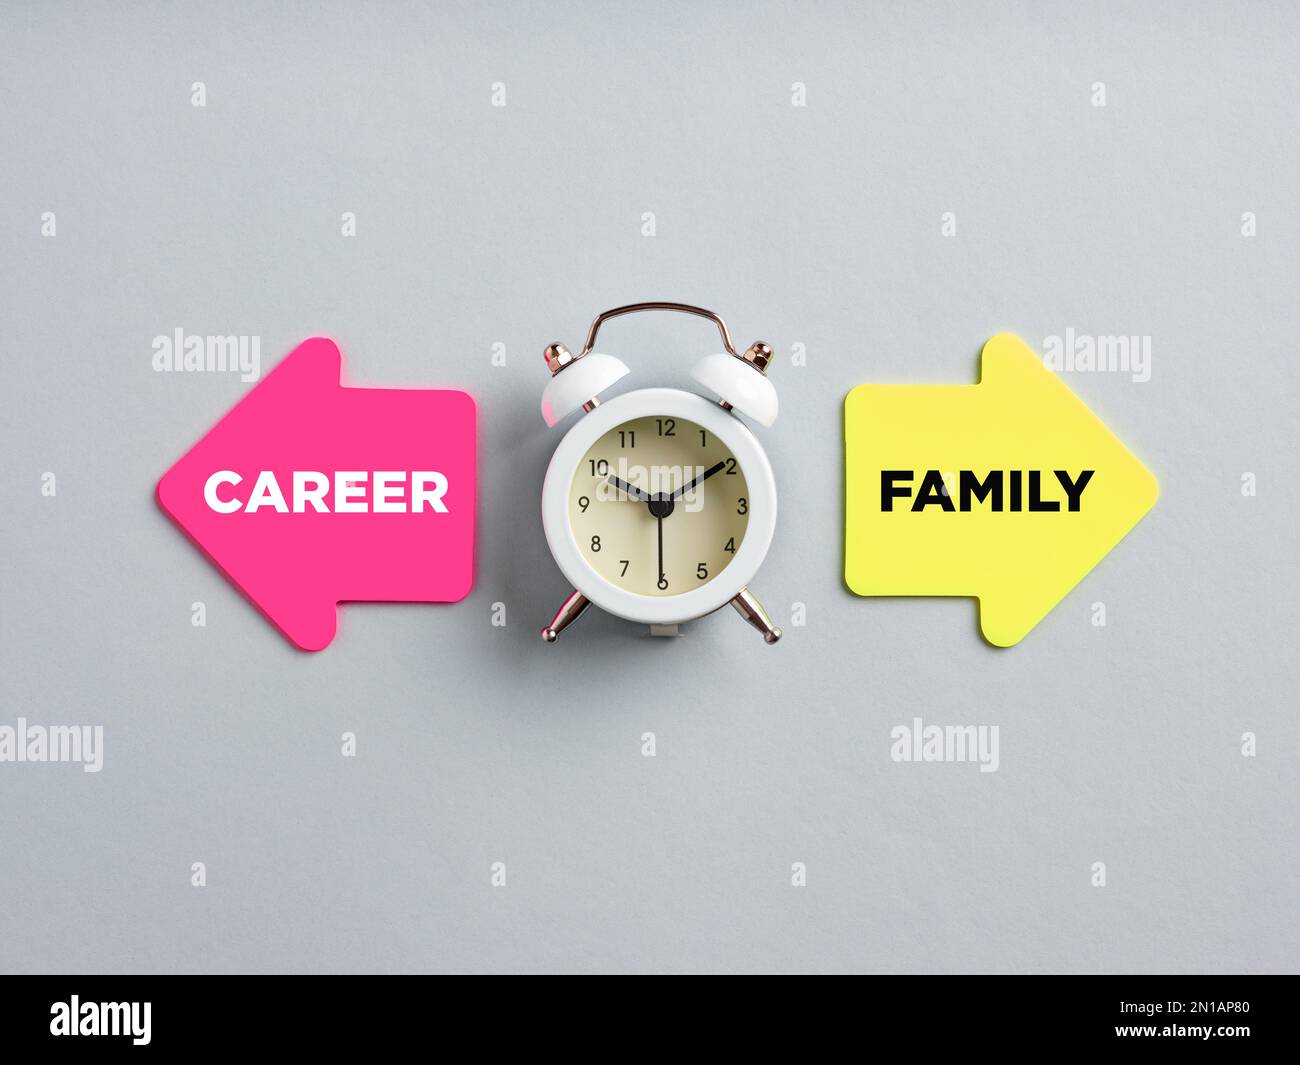 Karriere und Familie stehen auf Pfeile neben einer Uhr. Dilemma zwischen Karriere und Familie. Stockfoto